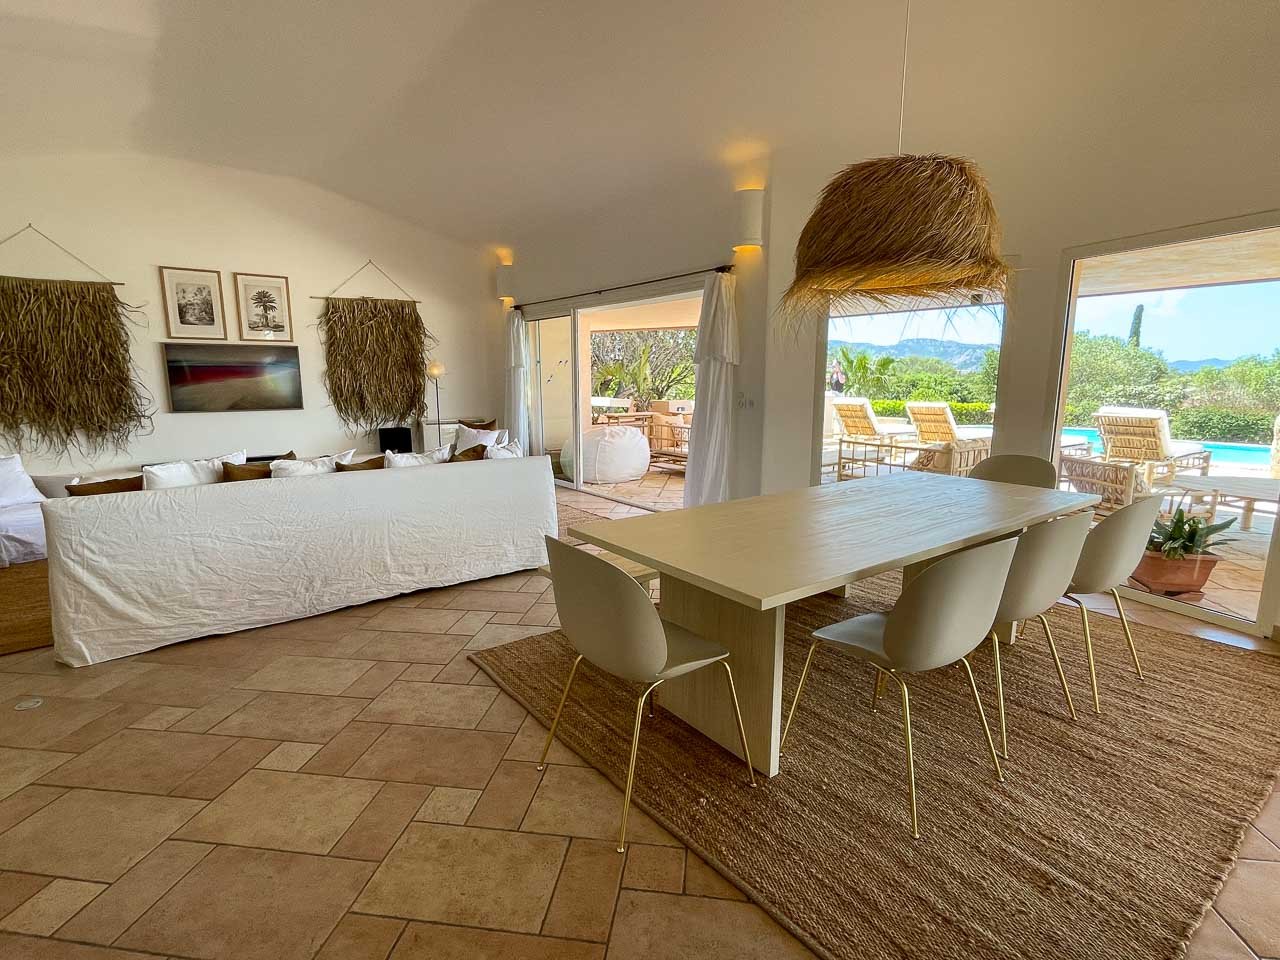 Salon séjour moderne et contemporain villa luxe piscine chauffée location villa 5 chambres Bianca Porto-Vecchio en Corse du sud vacances Cala Rossa Corse du sud